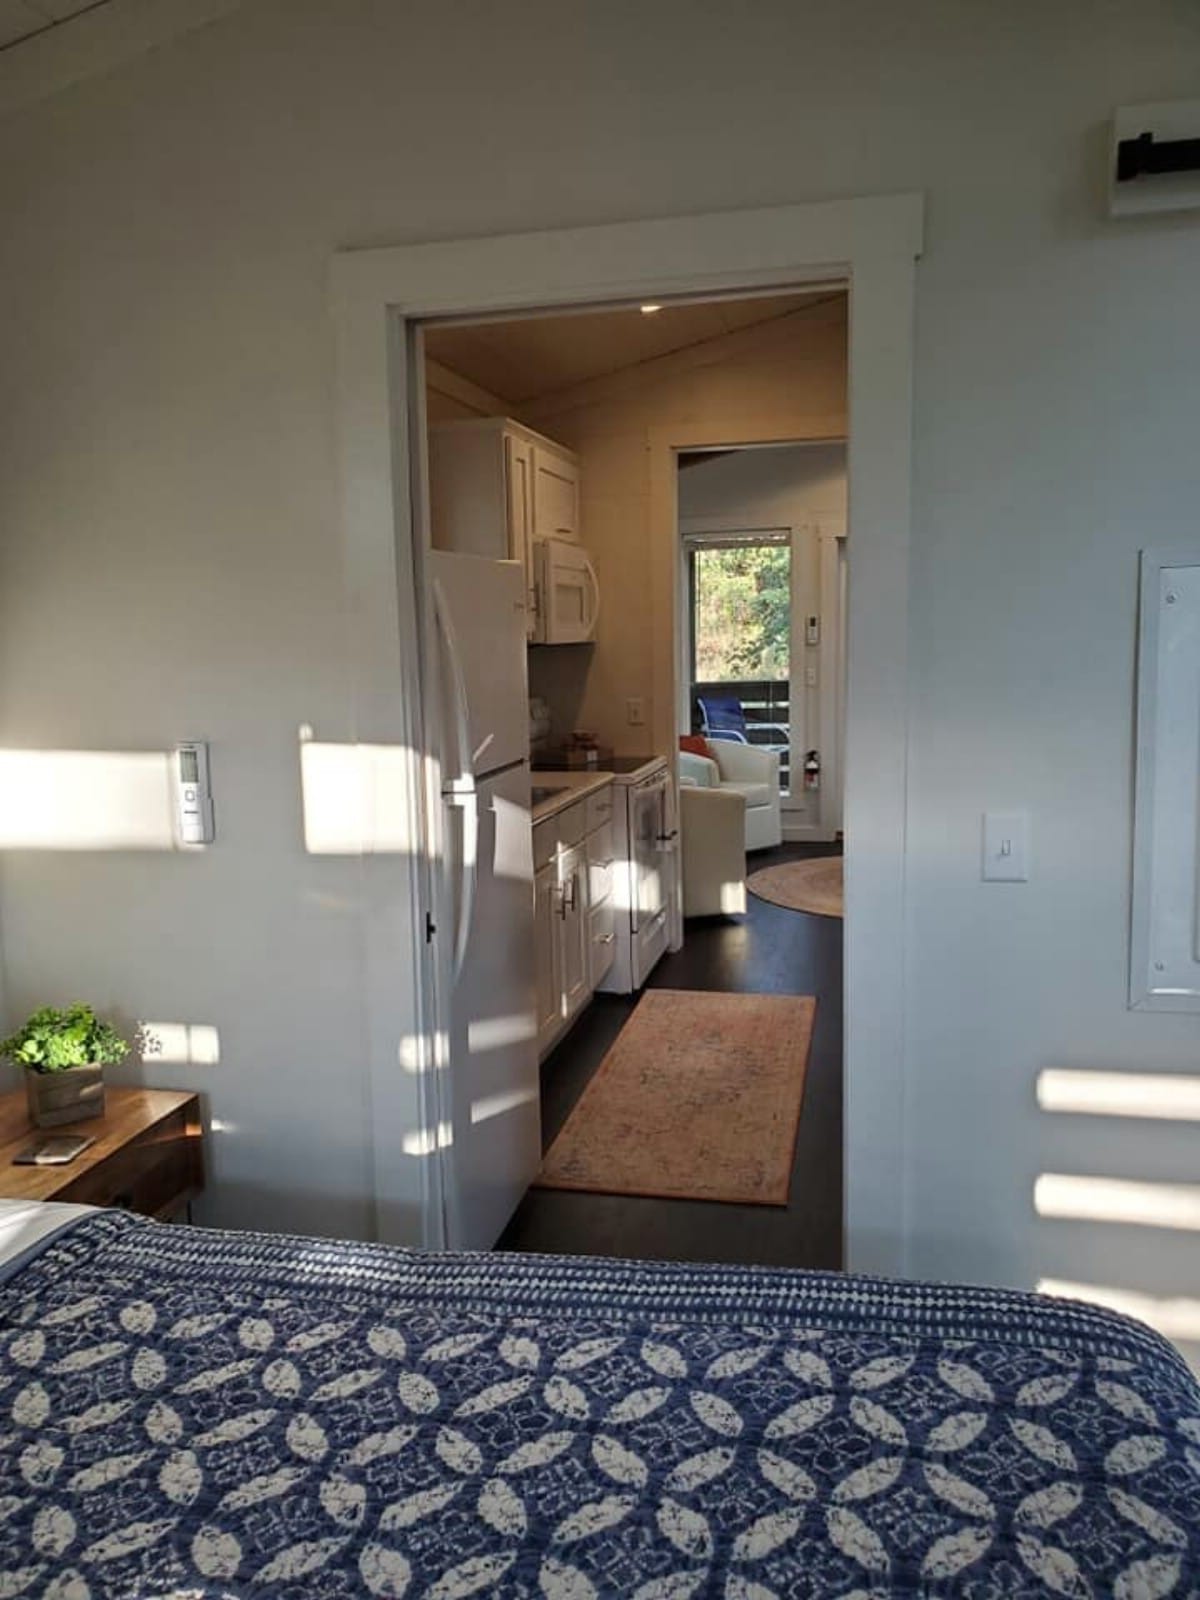 Bedroom door into kitchen